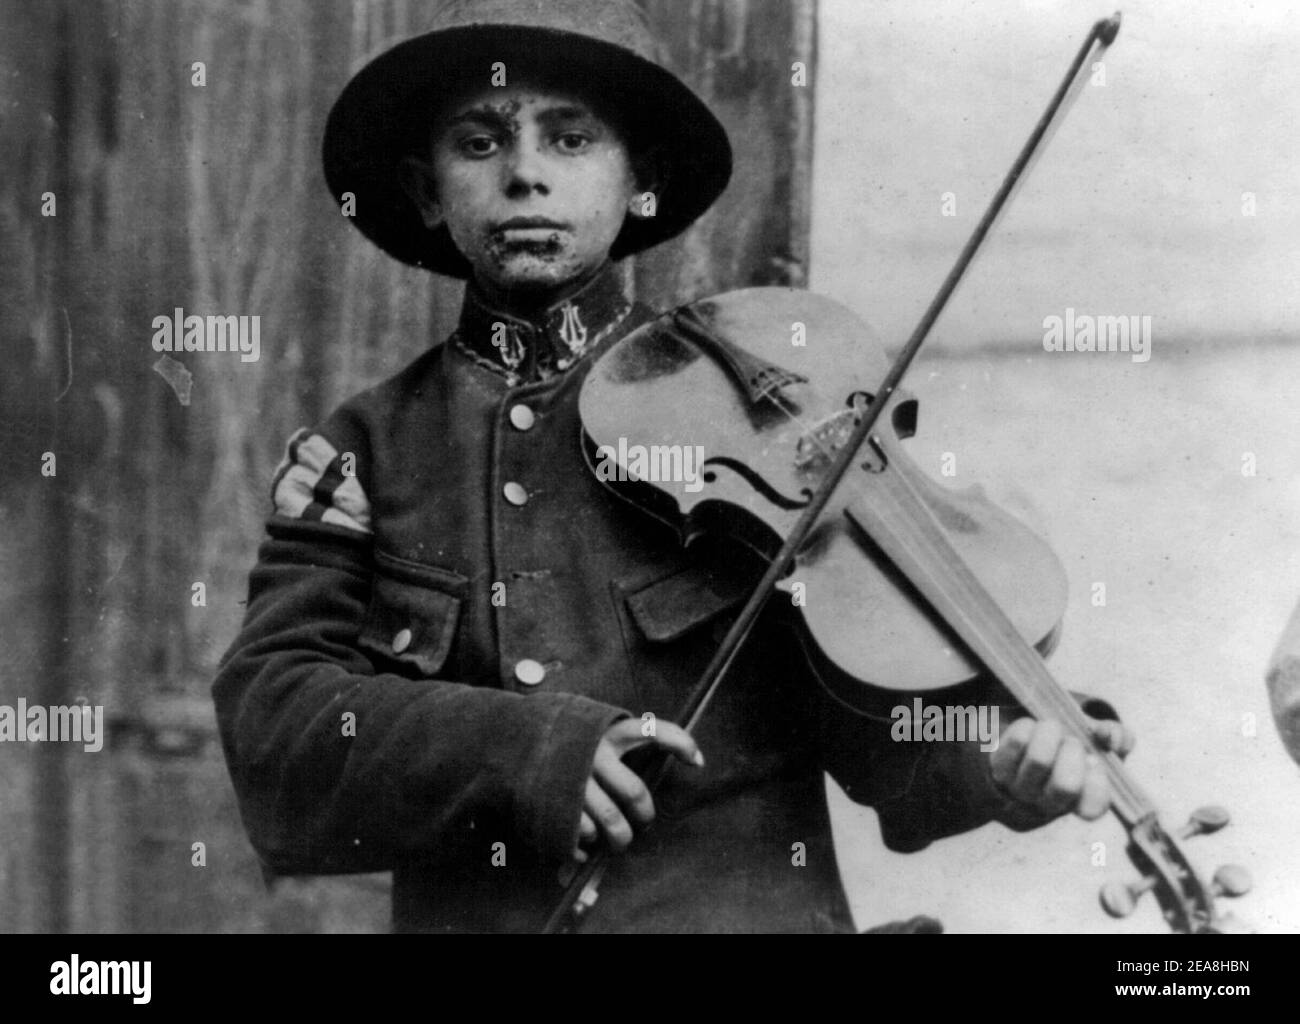 A Christmas street fiddler, Belgrade, Serbia, December 1918 Stock Photo